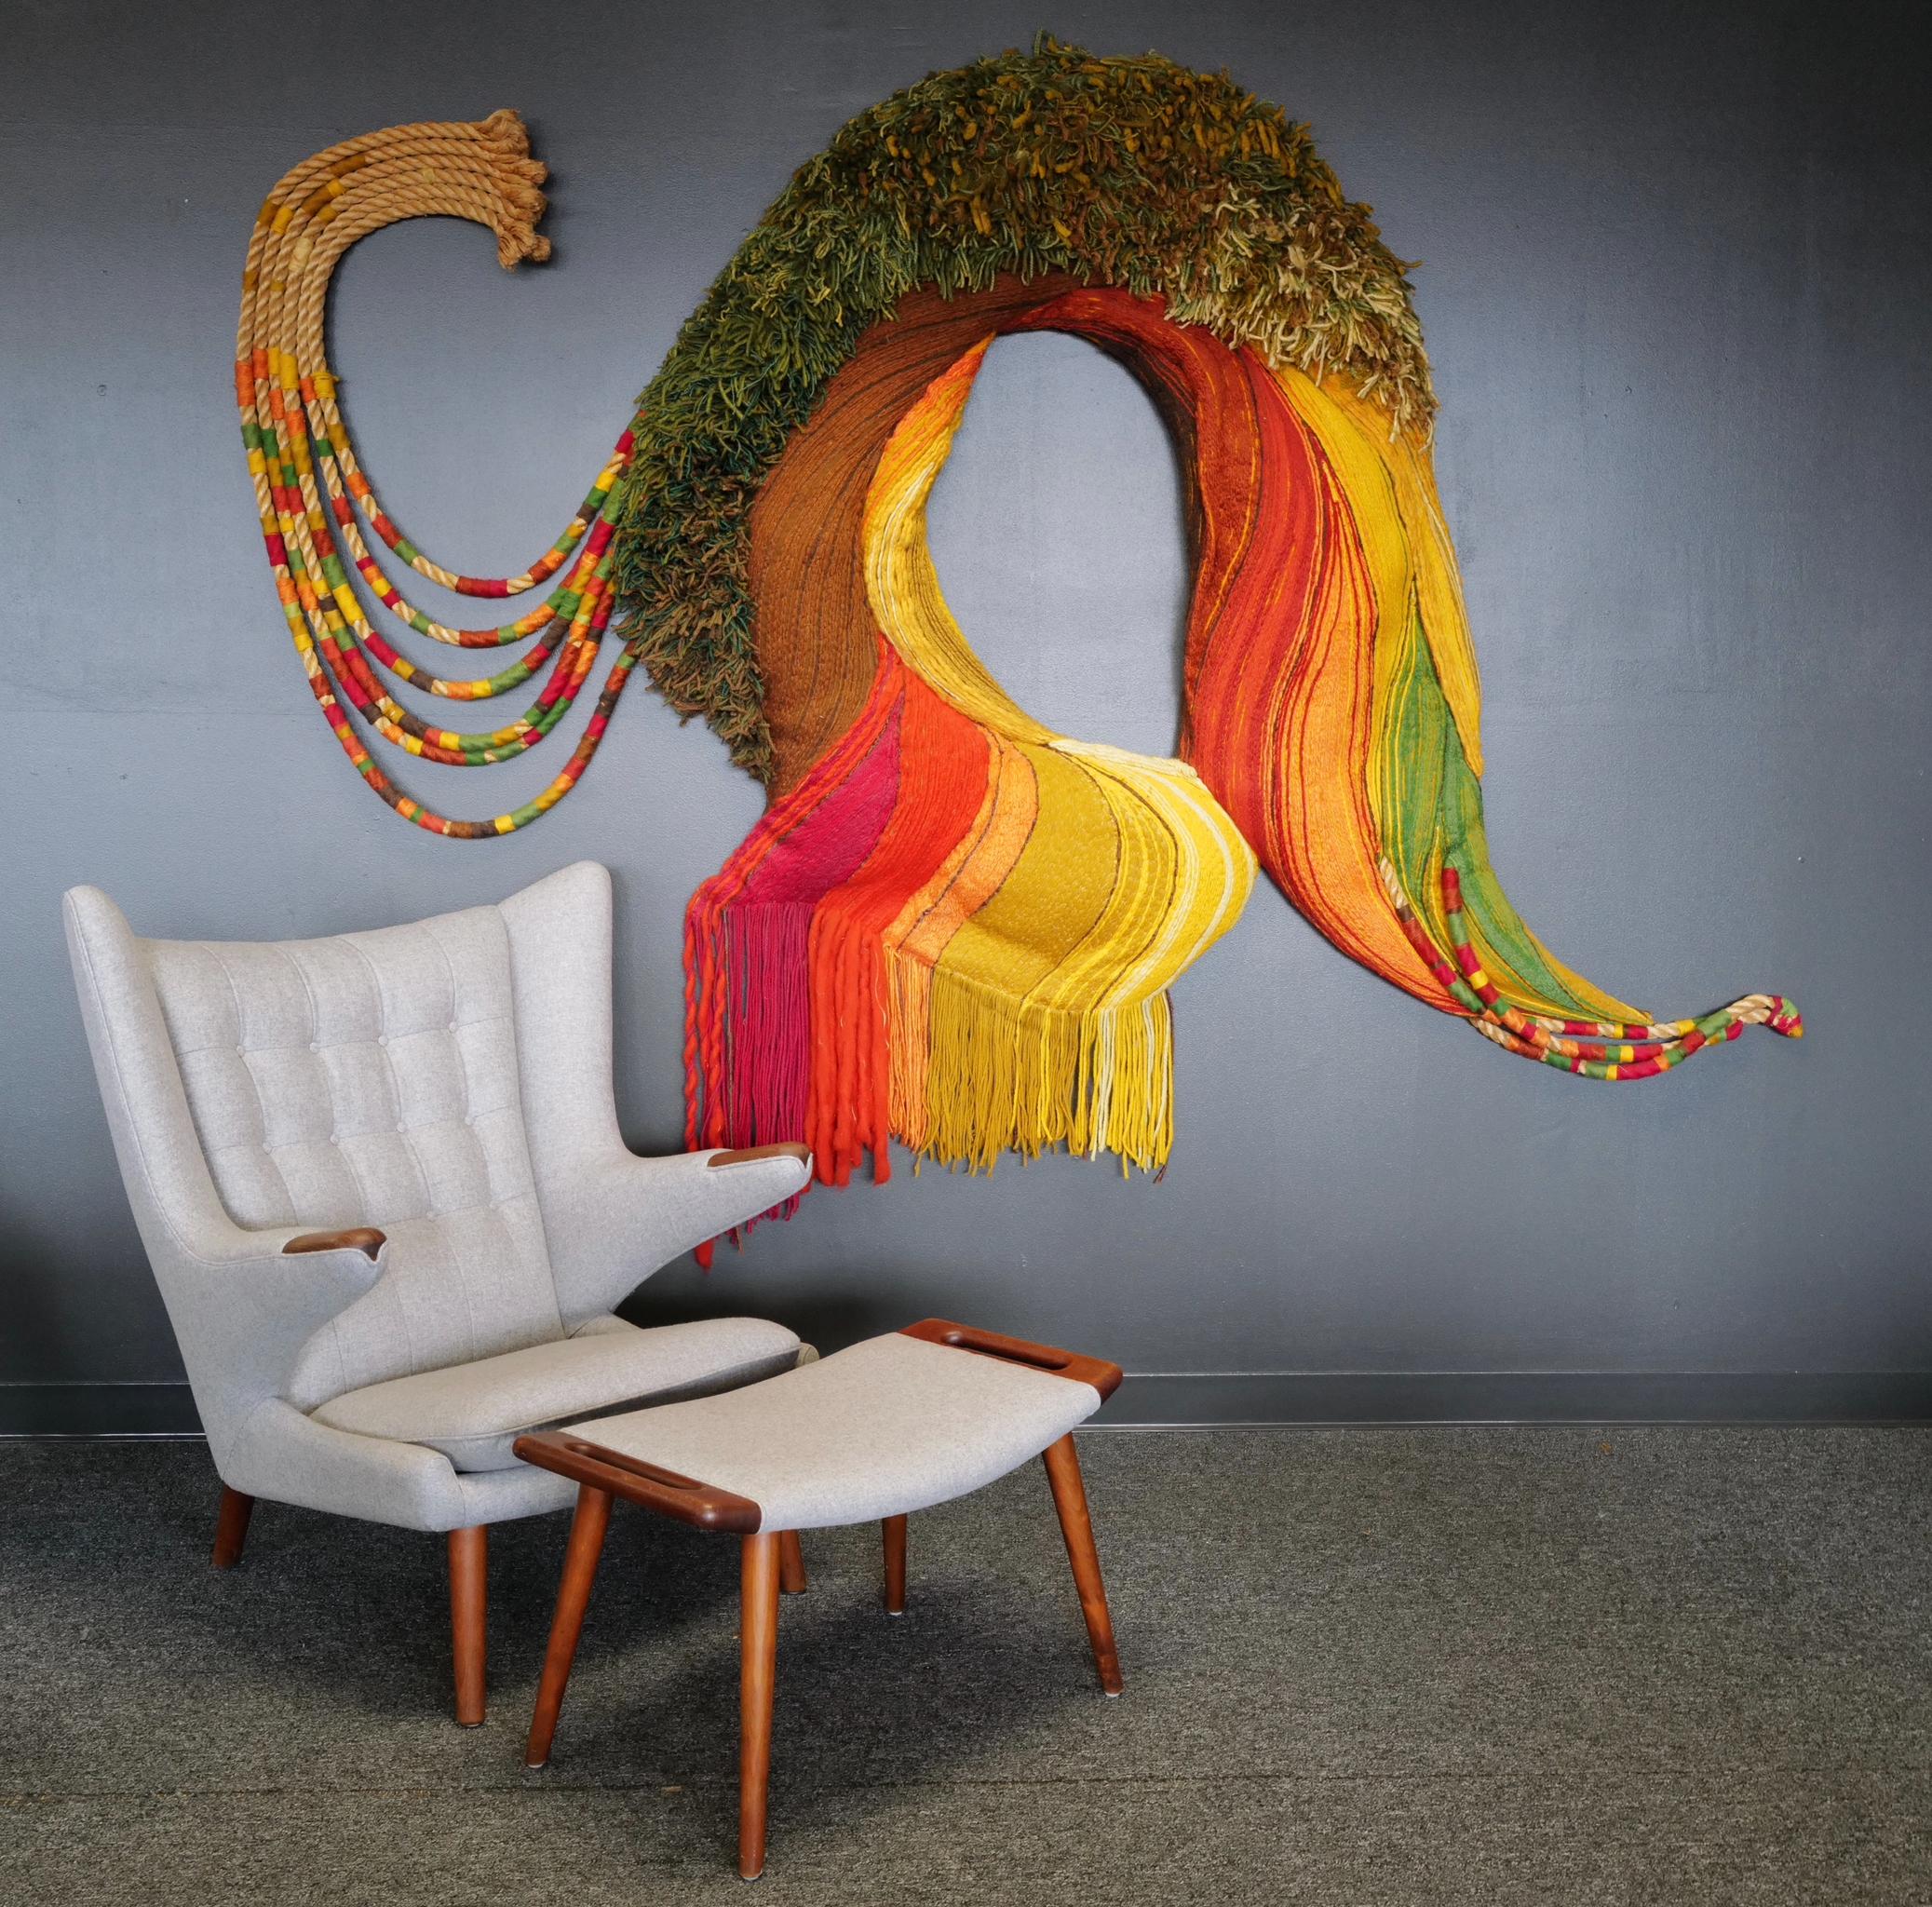 Dieses großflächige Kunstfasergeflecht von Janet Kuemmerlein besticht durch eine leuchtende Palette von Gelb-, Orange-, Rot- und Grüntönen, die auf komplizierte Weise zu einer großen organischen Form verwoben sind. Die satten Farbtöne gehen nahtlos